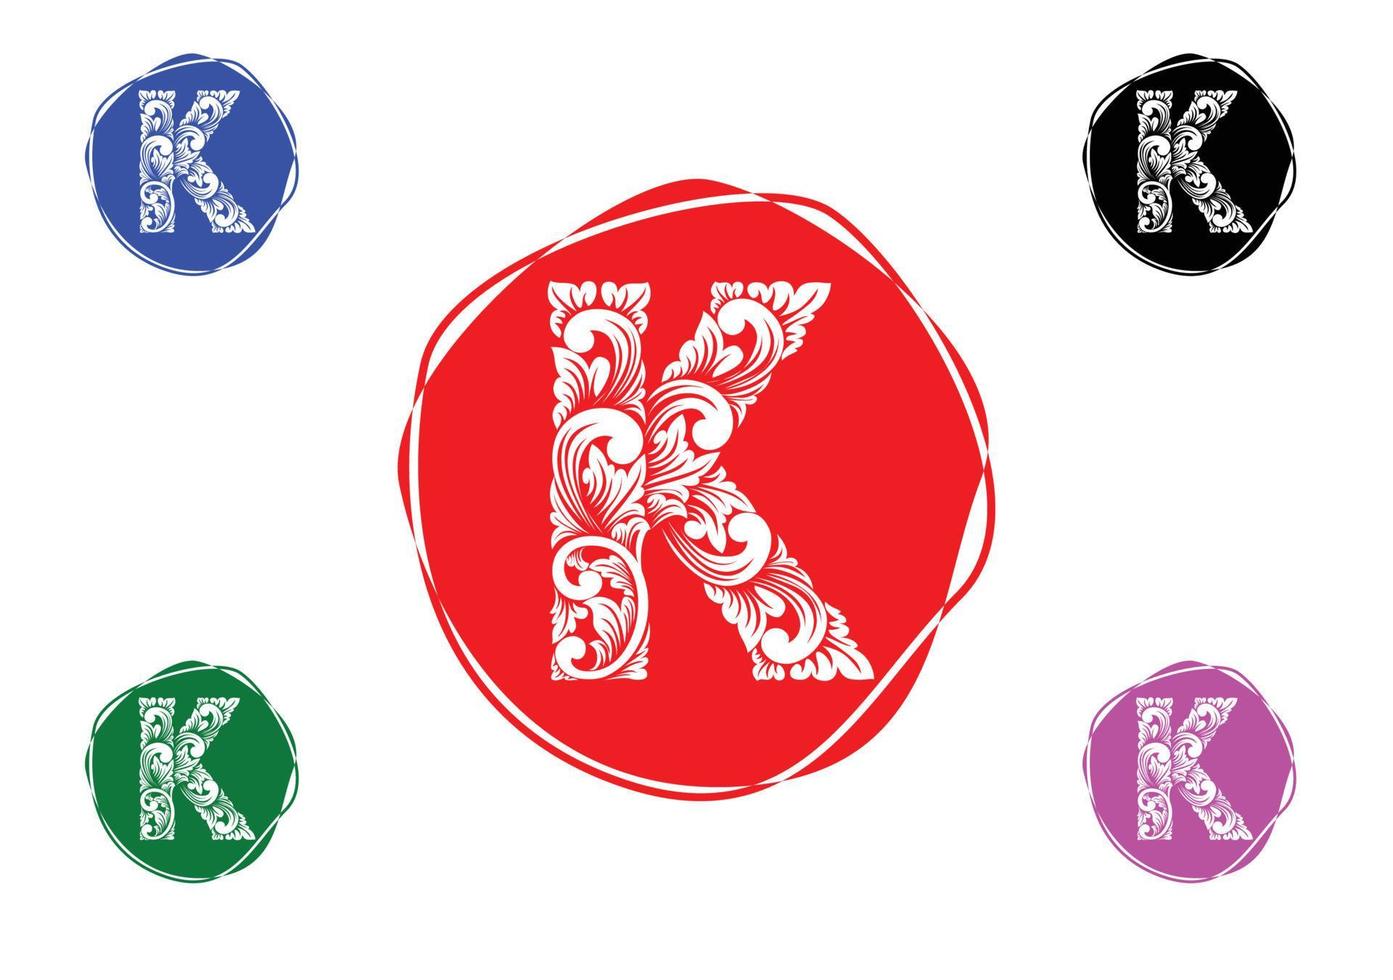 Plantilla de diseño de logotipo e icono de letra k vector